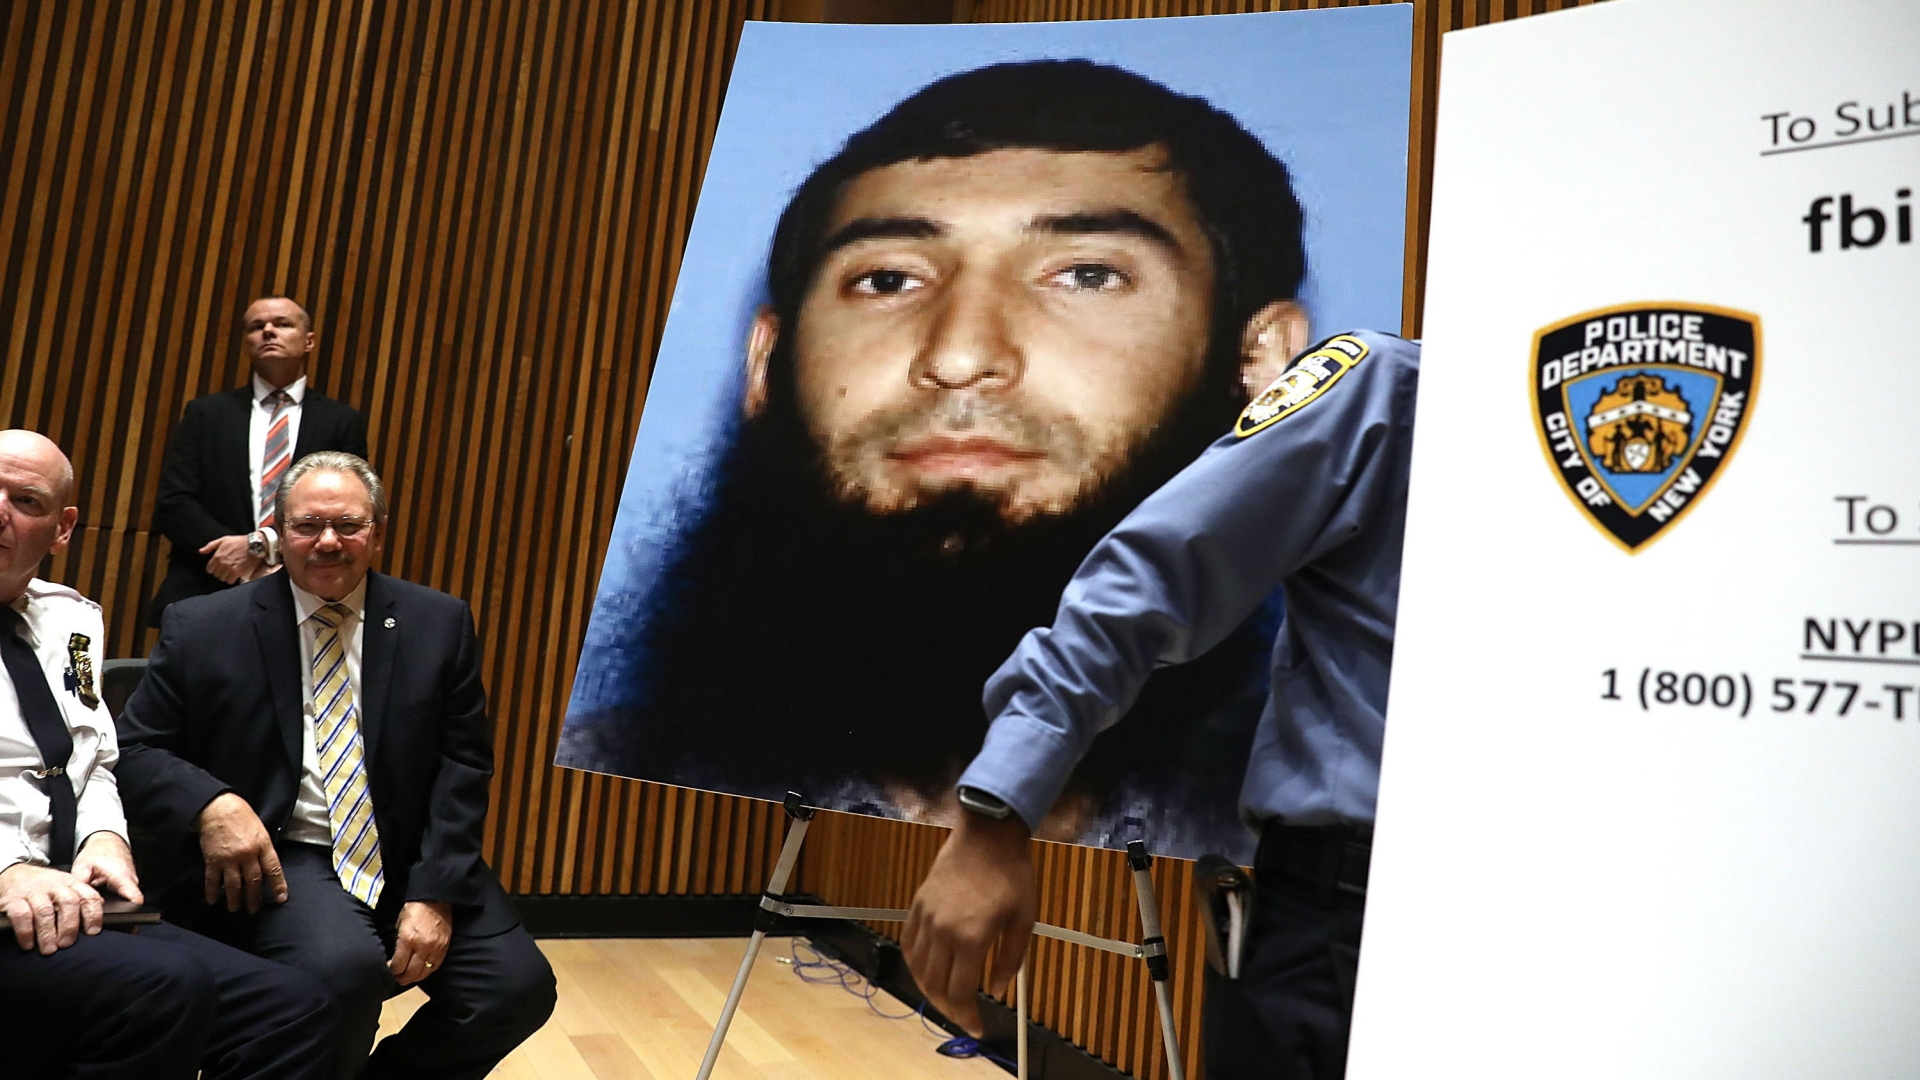 Pressekonferenz der New Yorker Polizei, bei der Sayfullo Saipov als mutmaßlicher Attentäter genannt wurde.